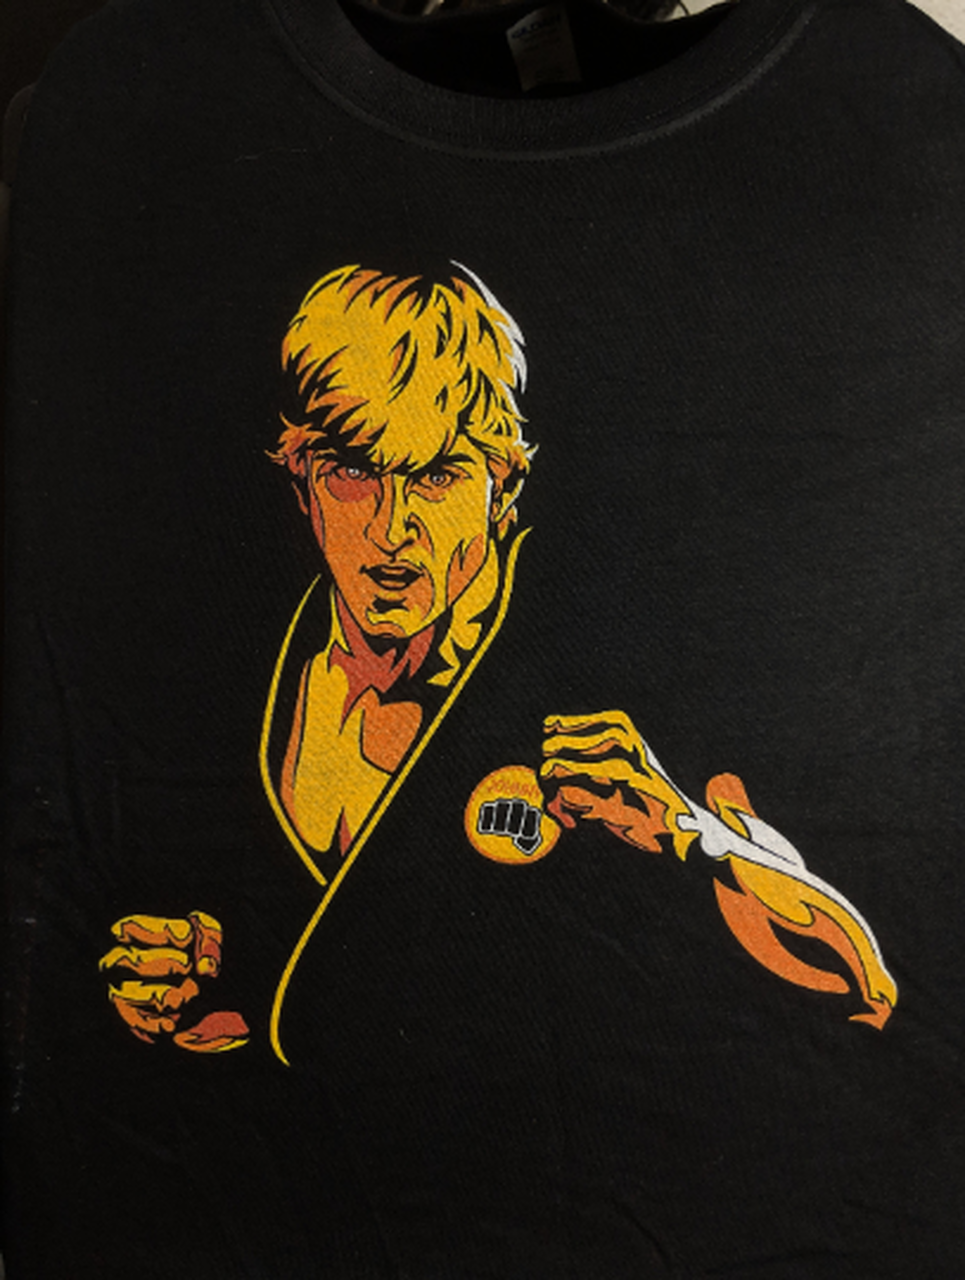 Johnny Lawrence Shirt Cobra Kai Shirt The Karate Kid Shirt